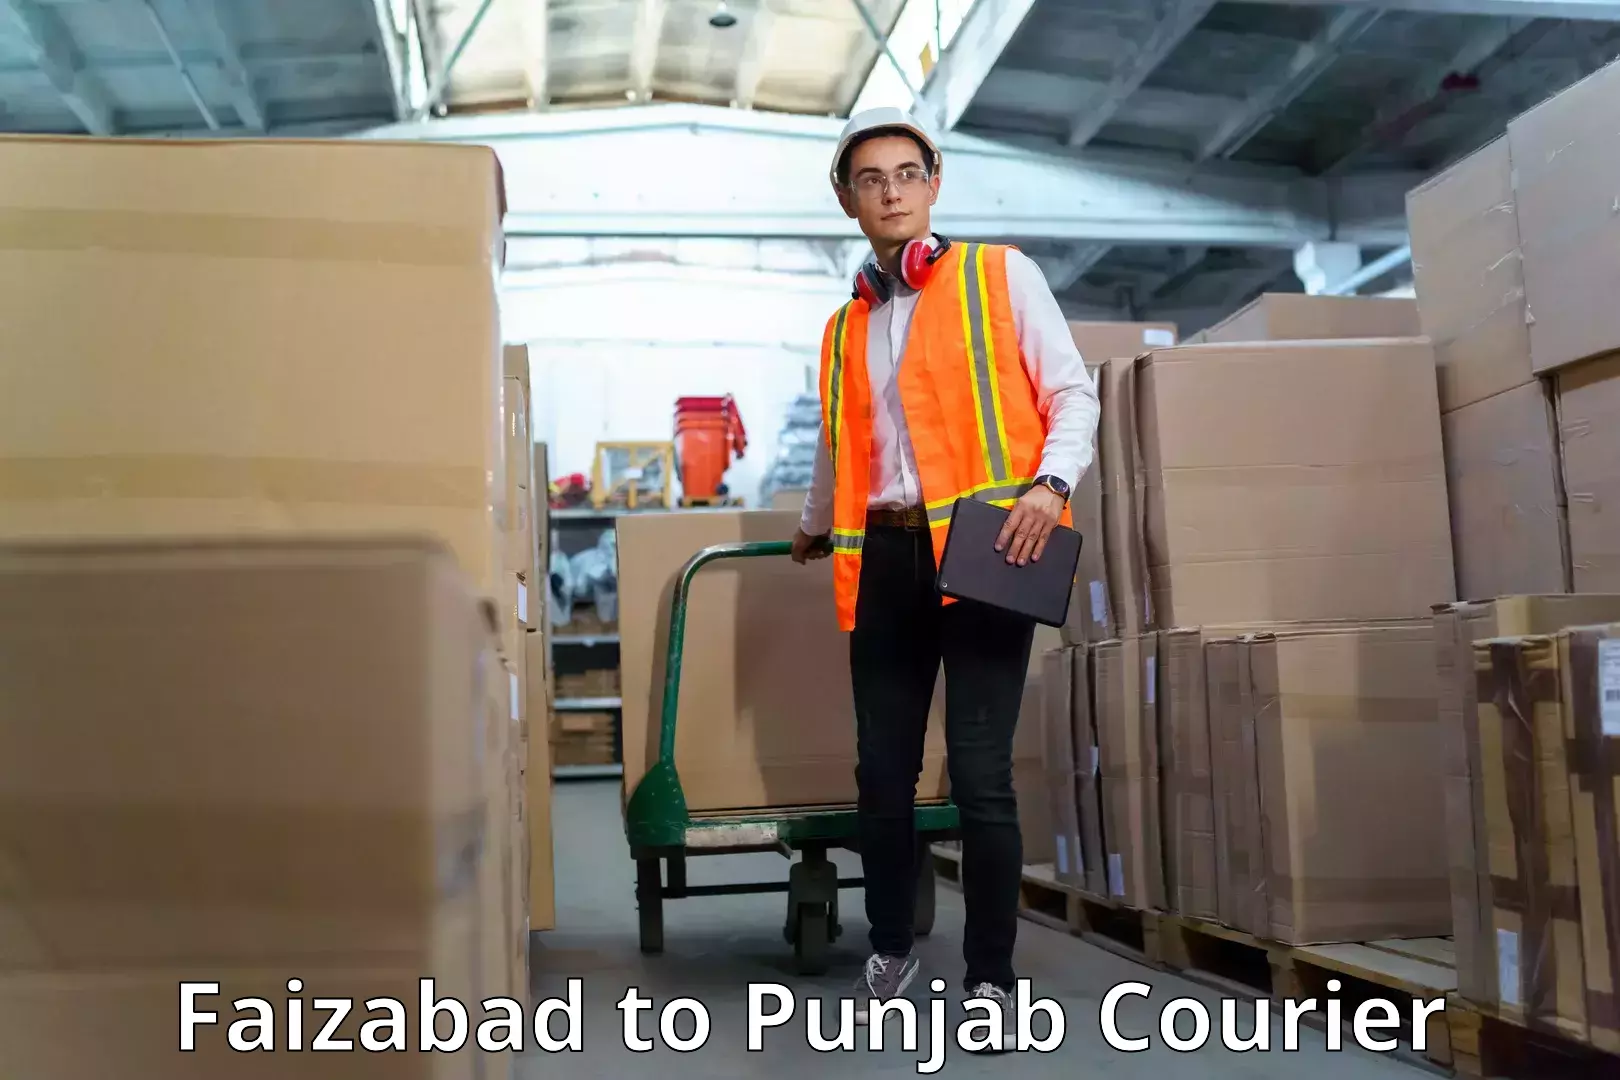 Courier service comparison Faizabad to Zira